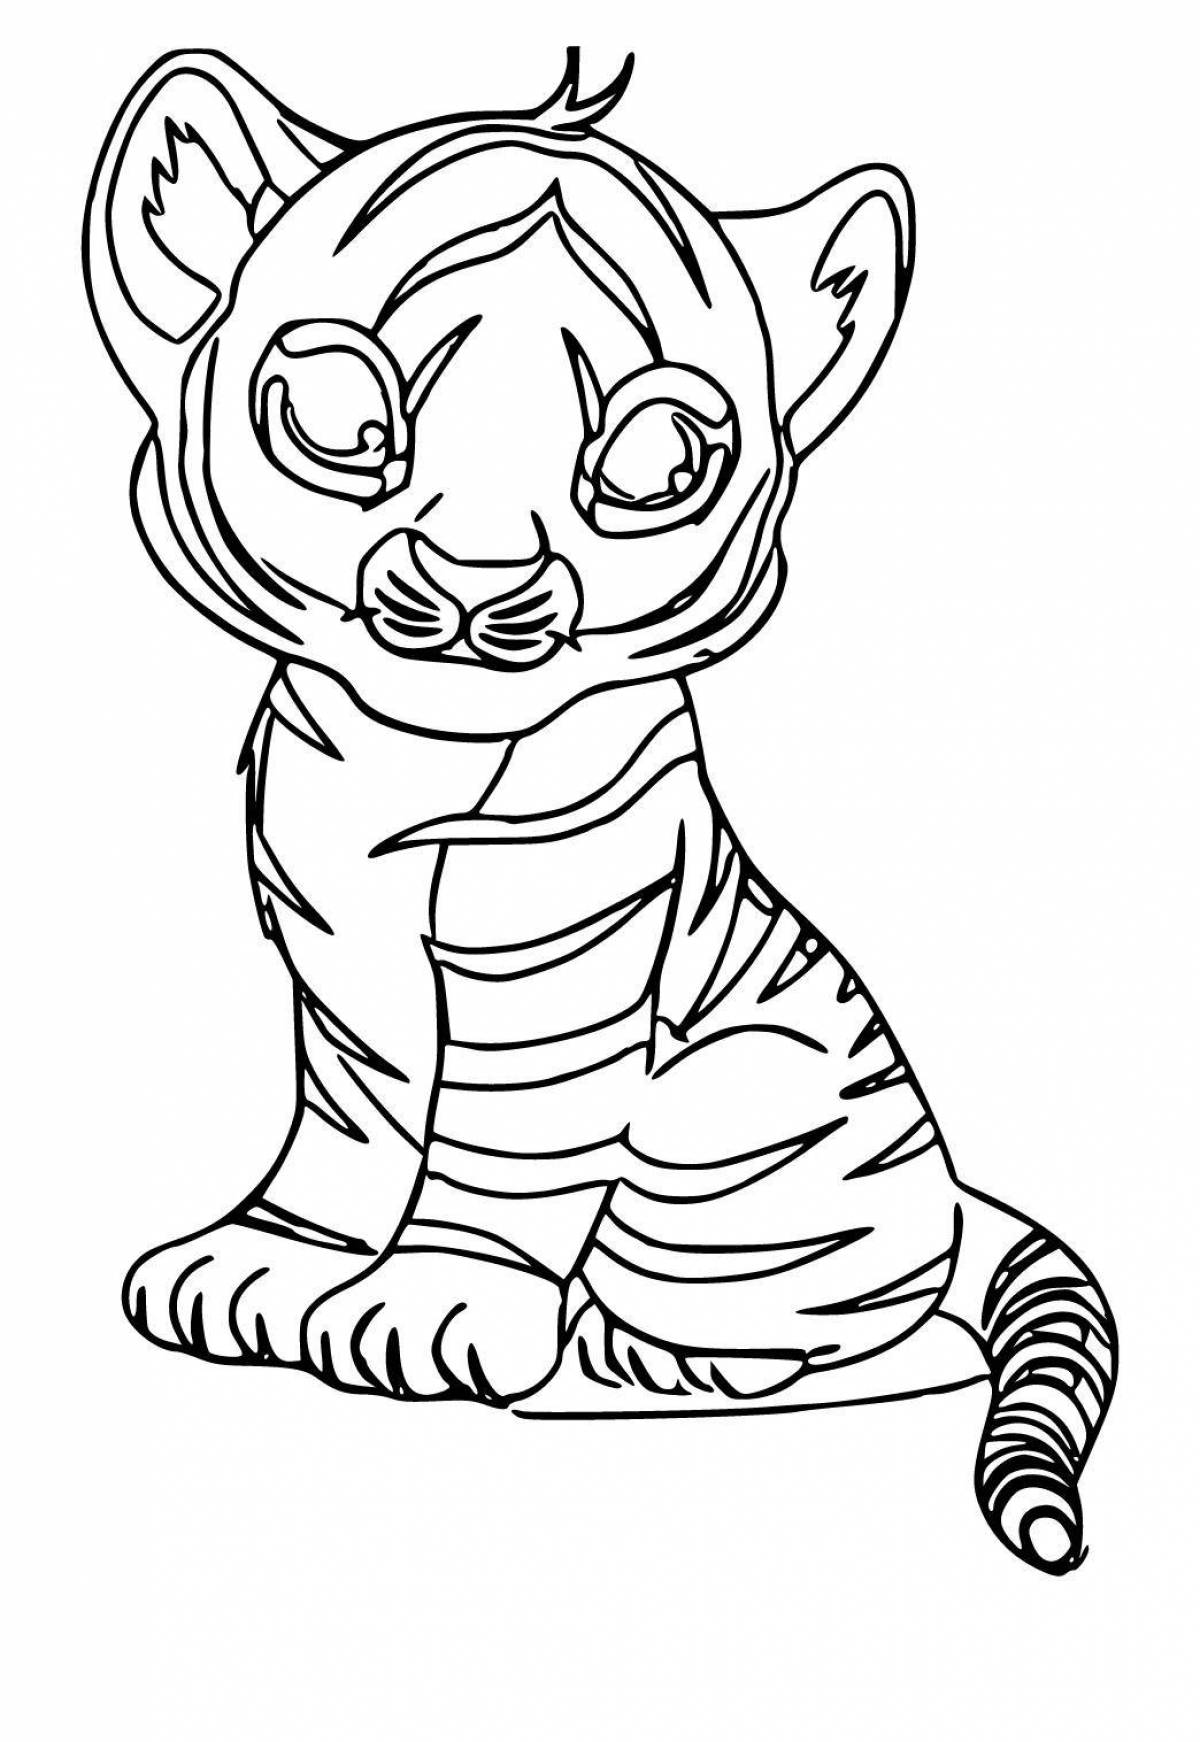 Яркая раскраска тигр для детей 6-7 лет